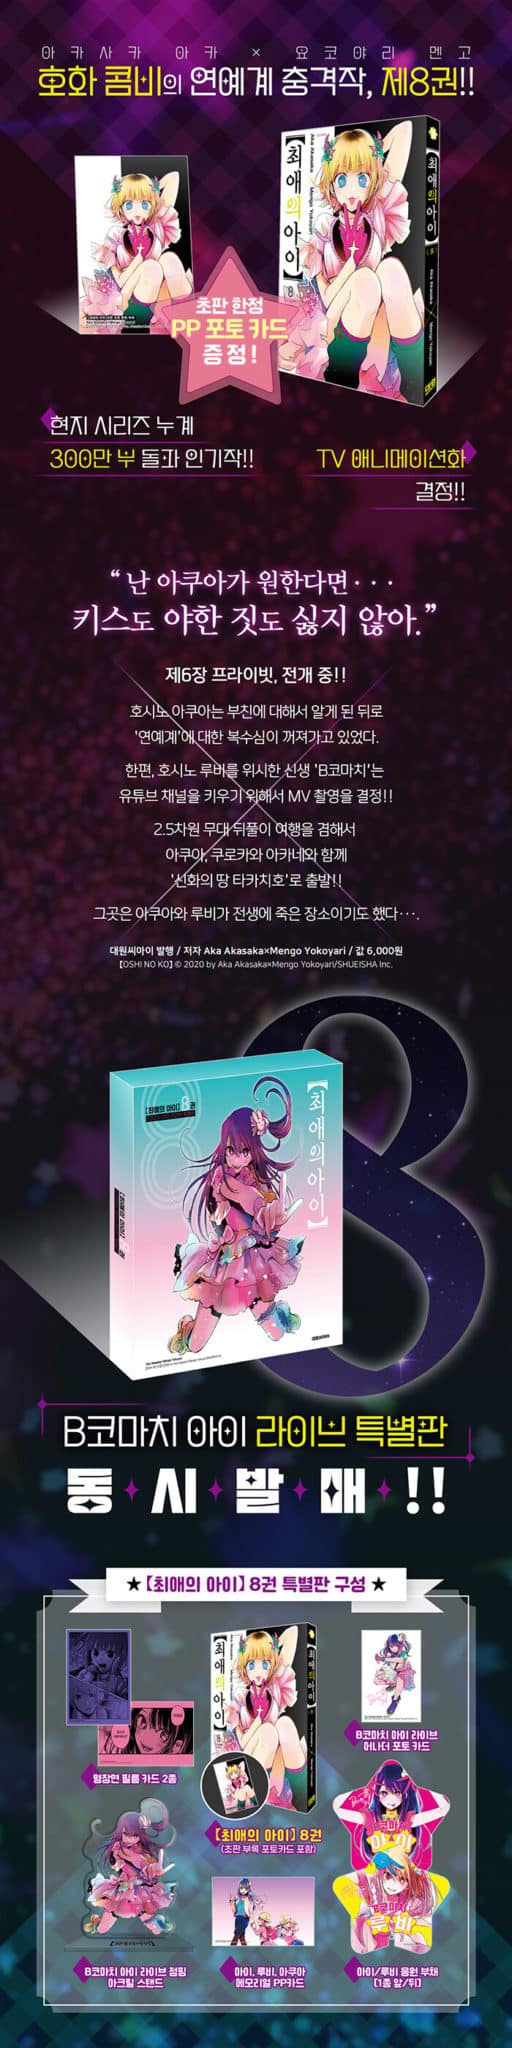 Oshi No Ko Volume Korea Limited Special Edition